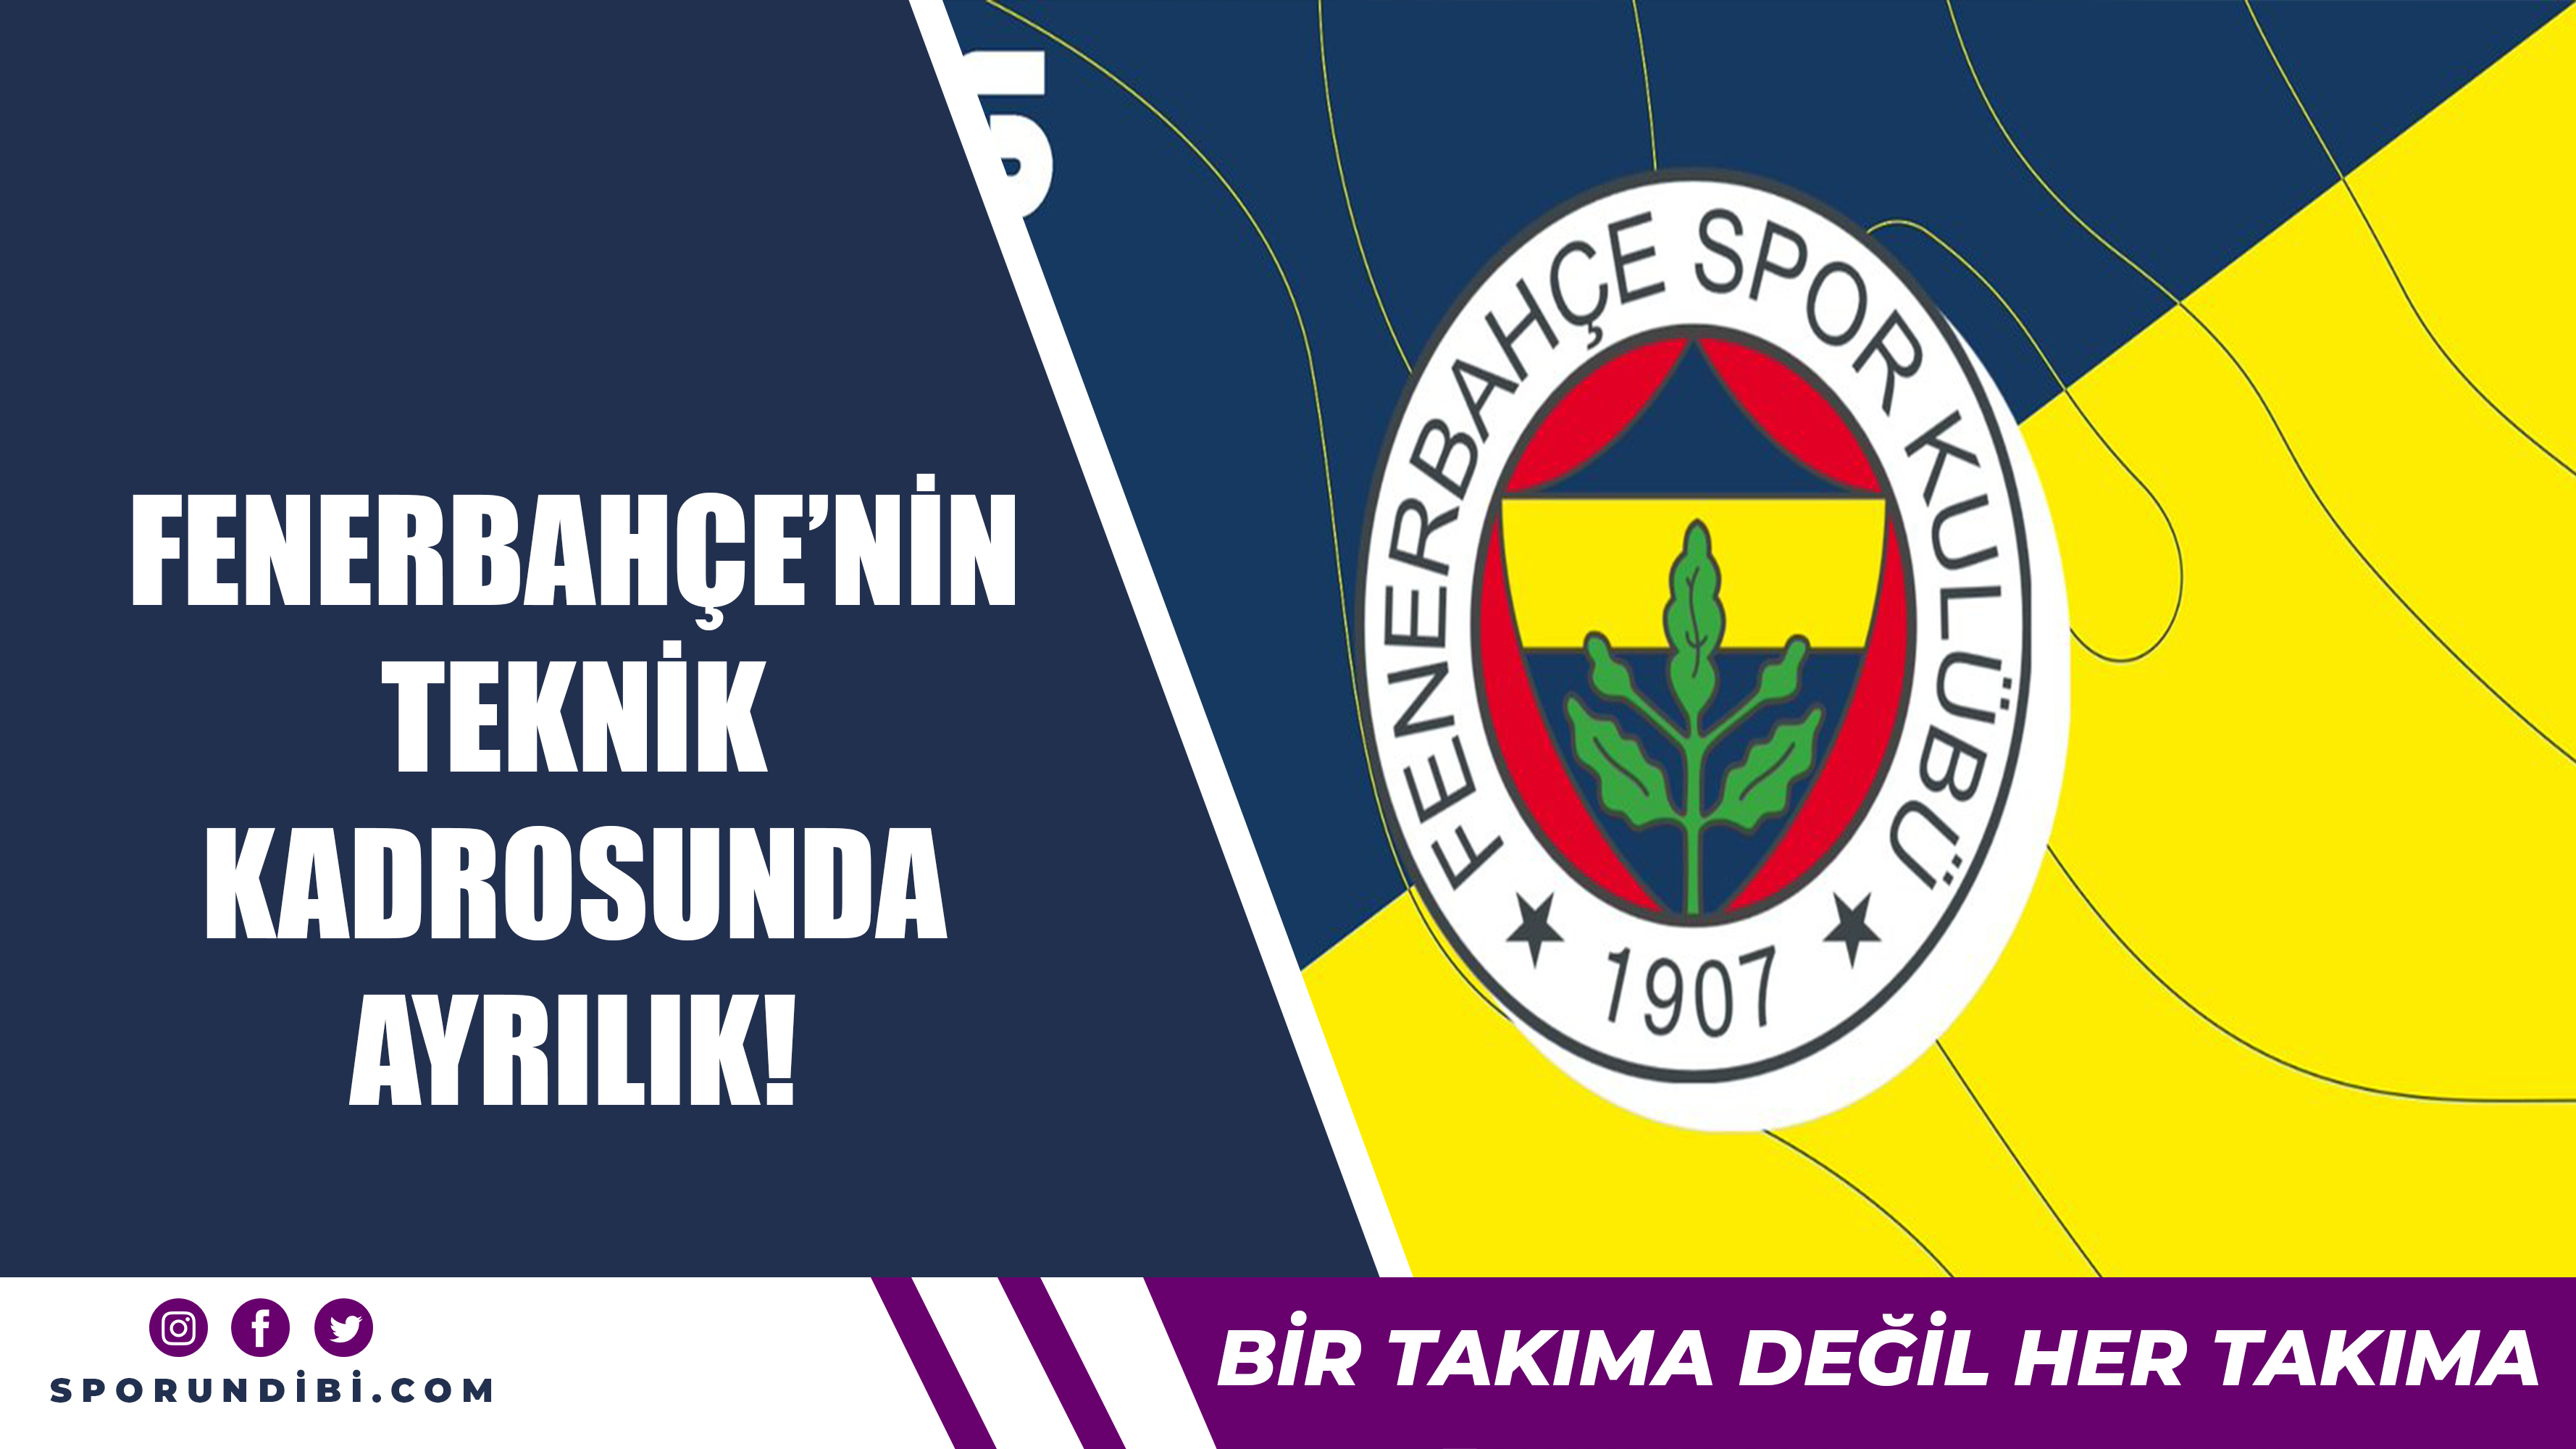 Fenerbahçe'nin teknik kadrosunda ayrılık!